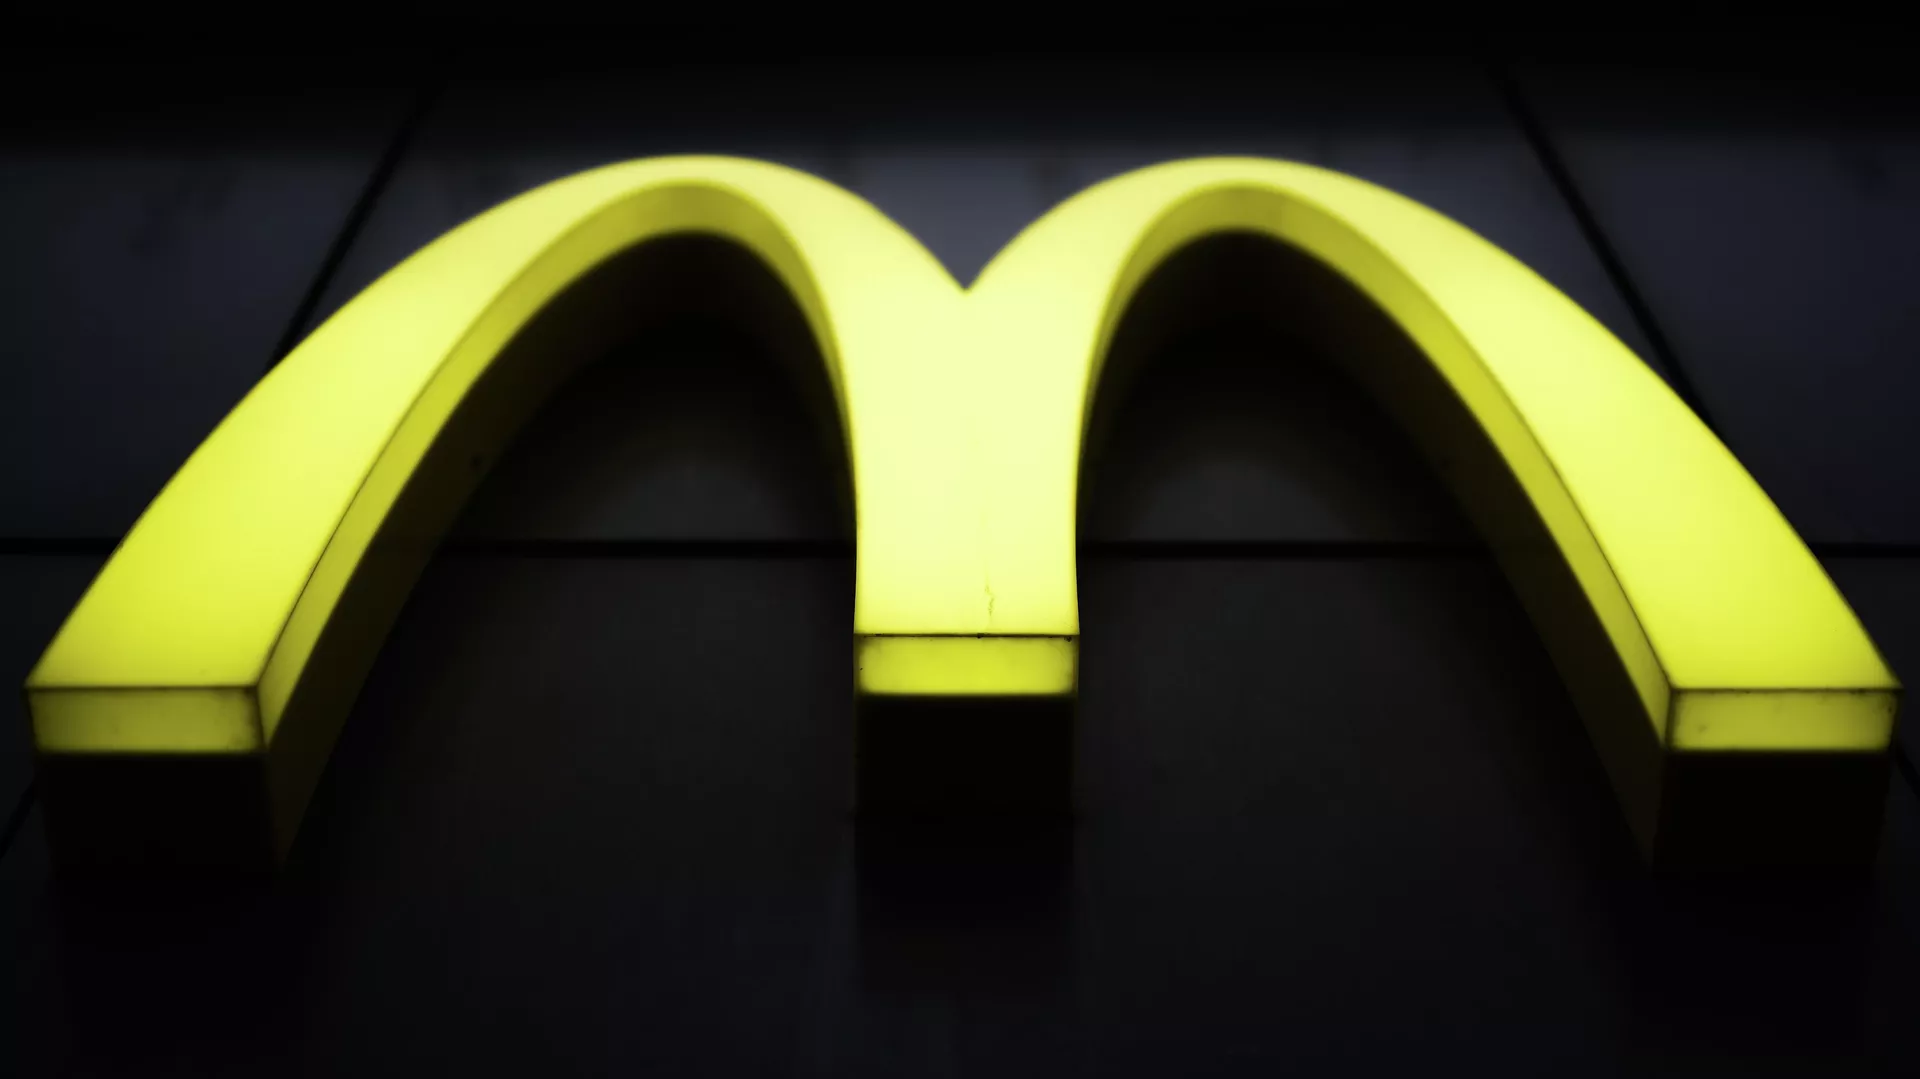 СМИ: McDonald's разрабатывает дешевый обед из-за низких доходов в США